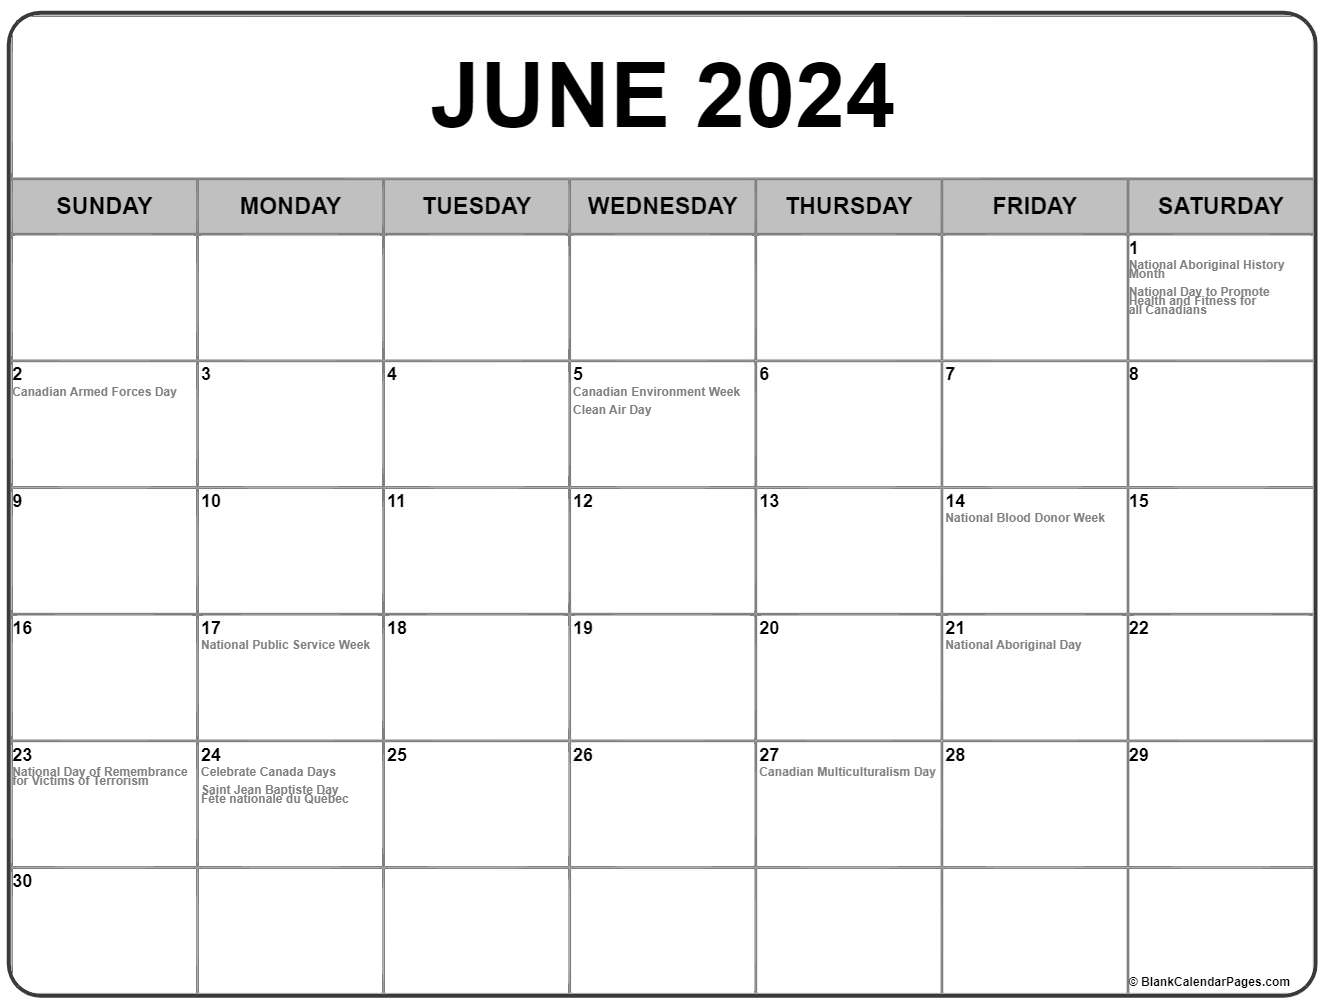 June 2024 Holiday Calendar Ivie Rhodie